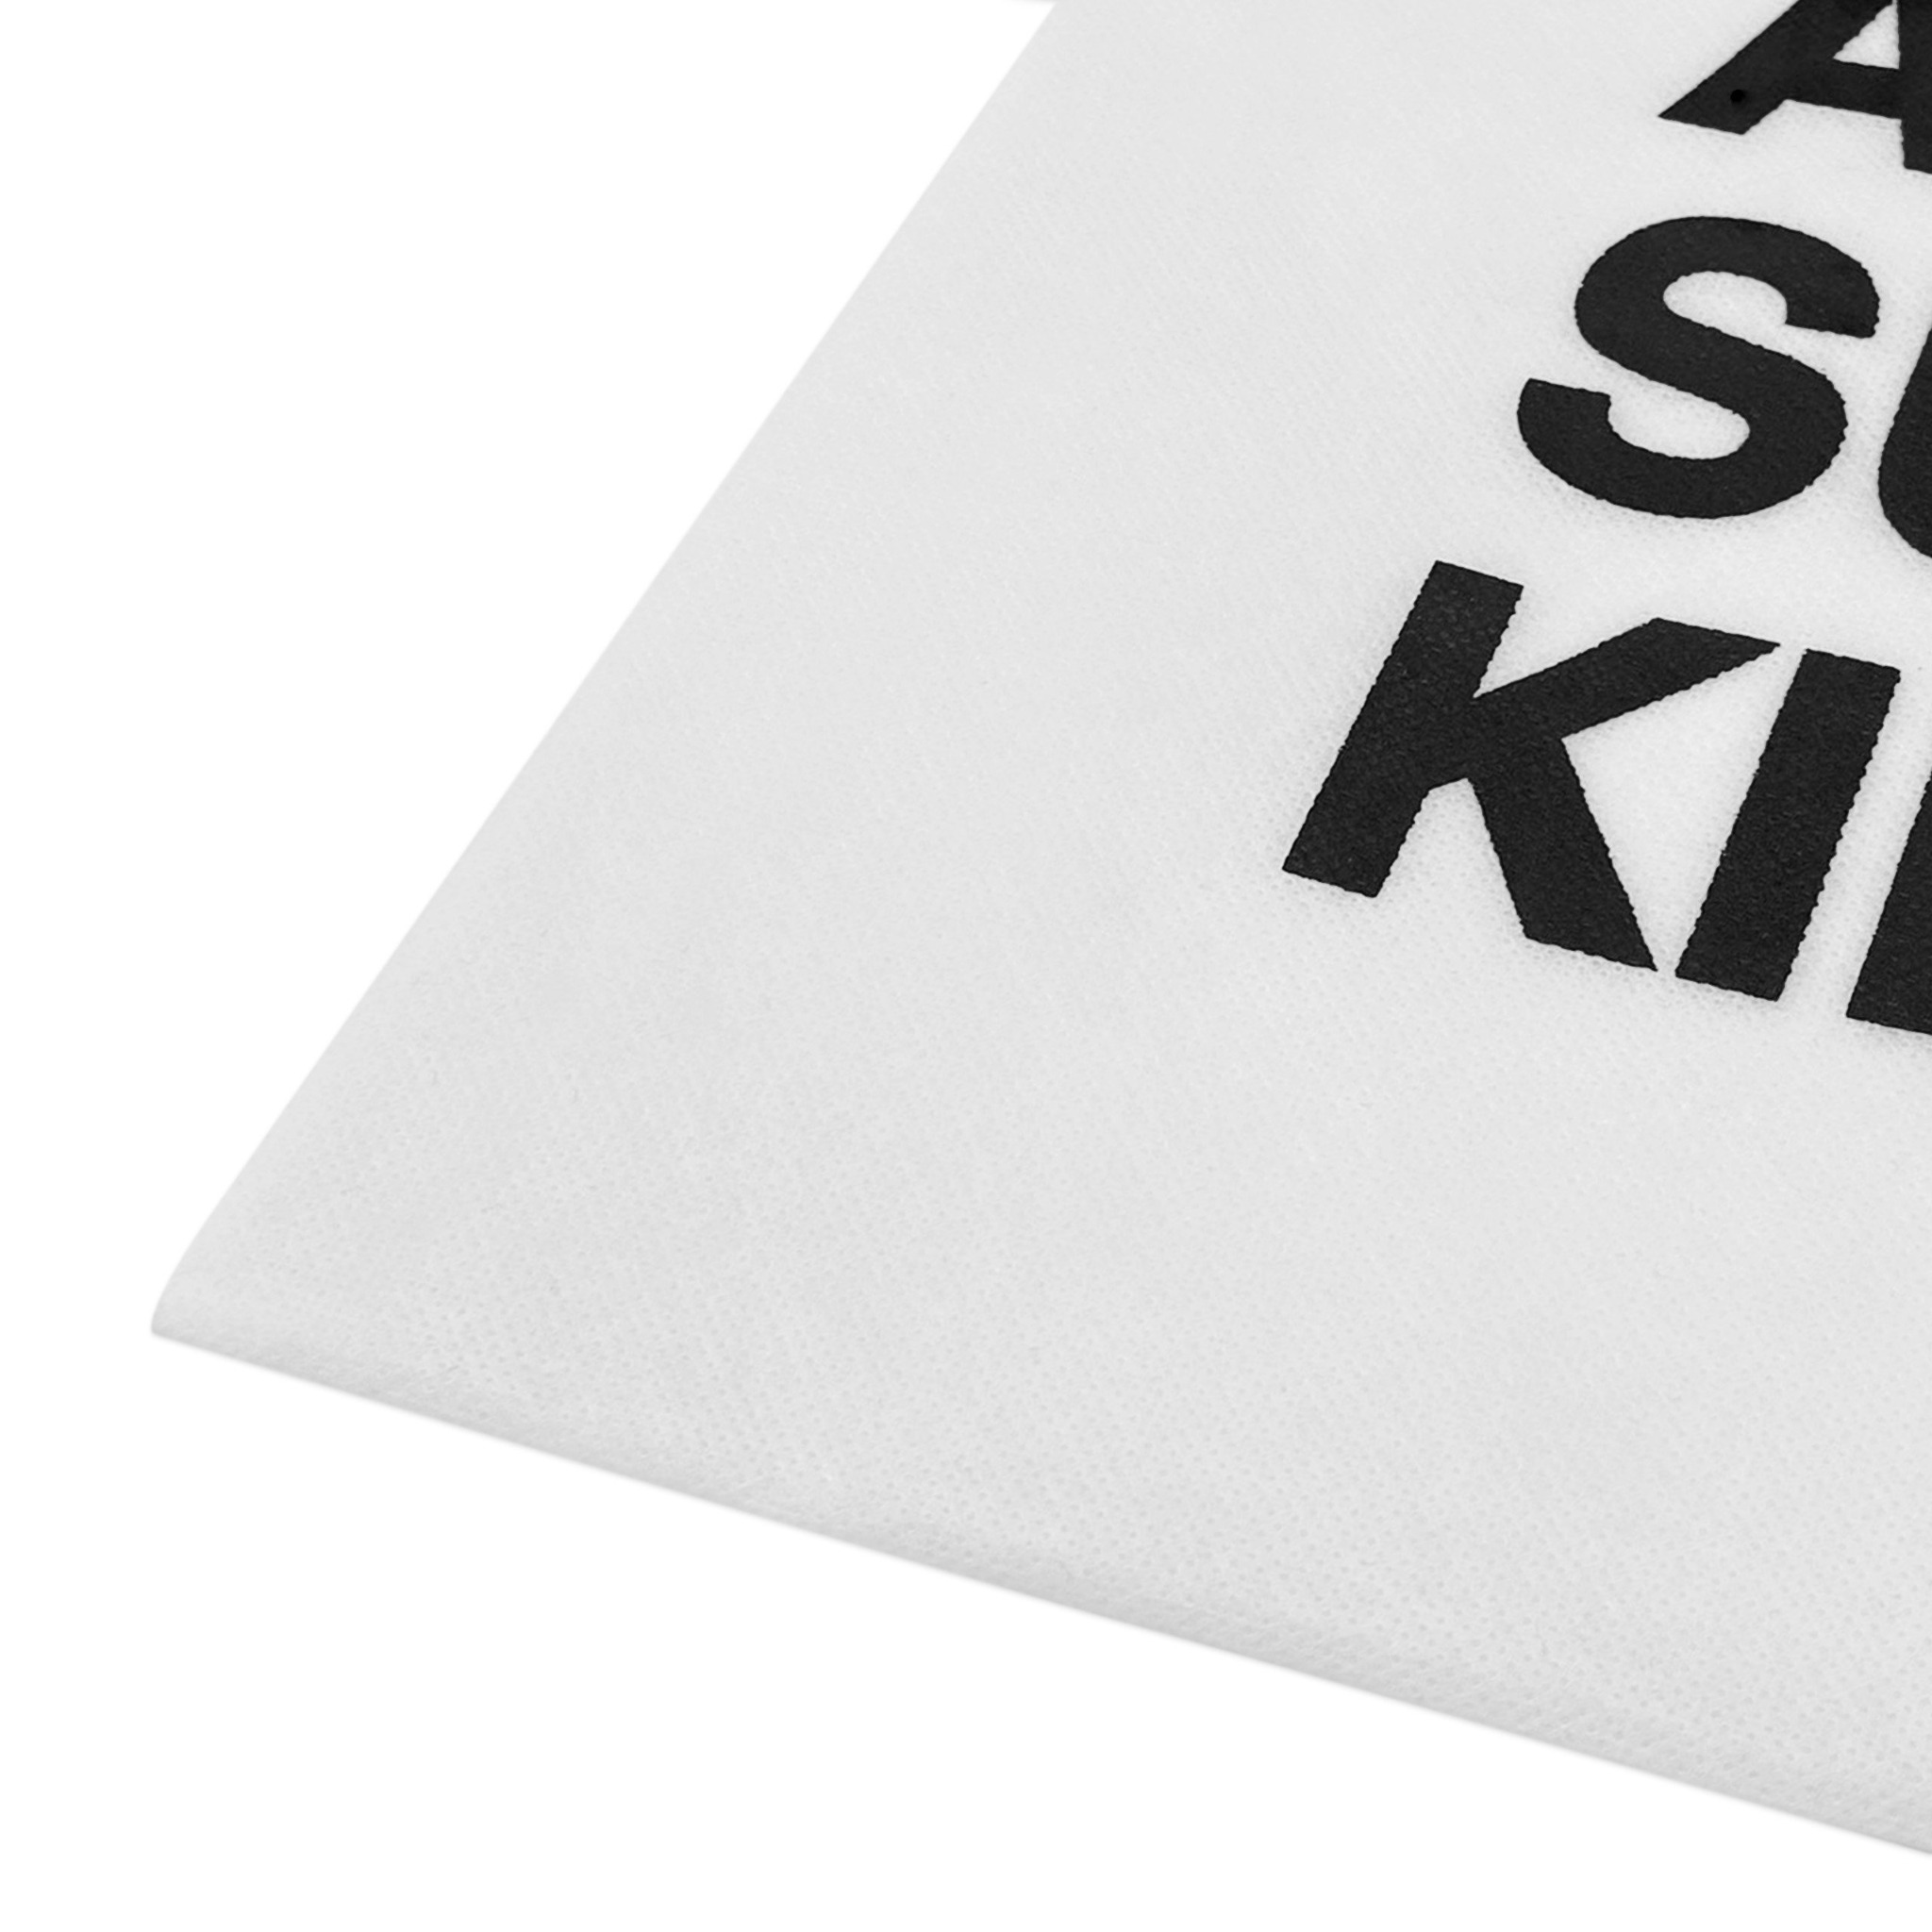  Túi vải không dệt Killsystem chữ in màu trắng quai đen 